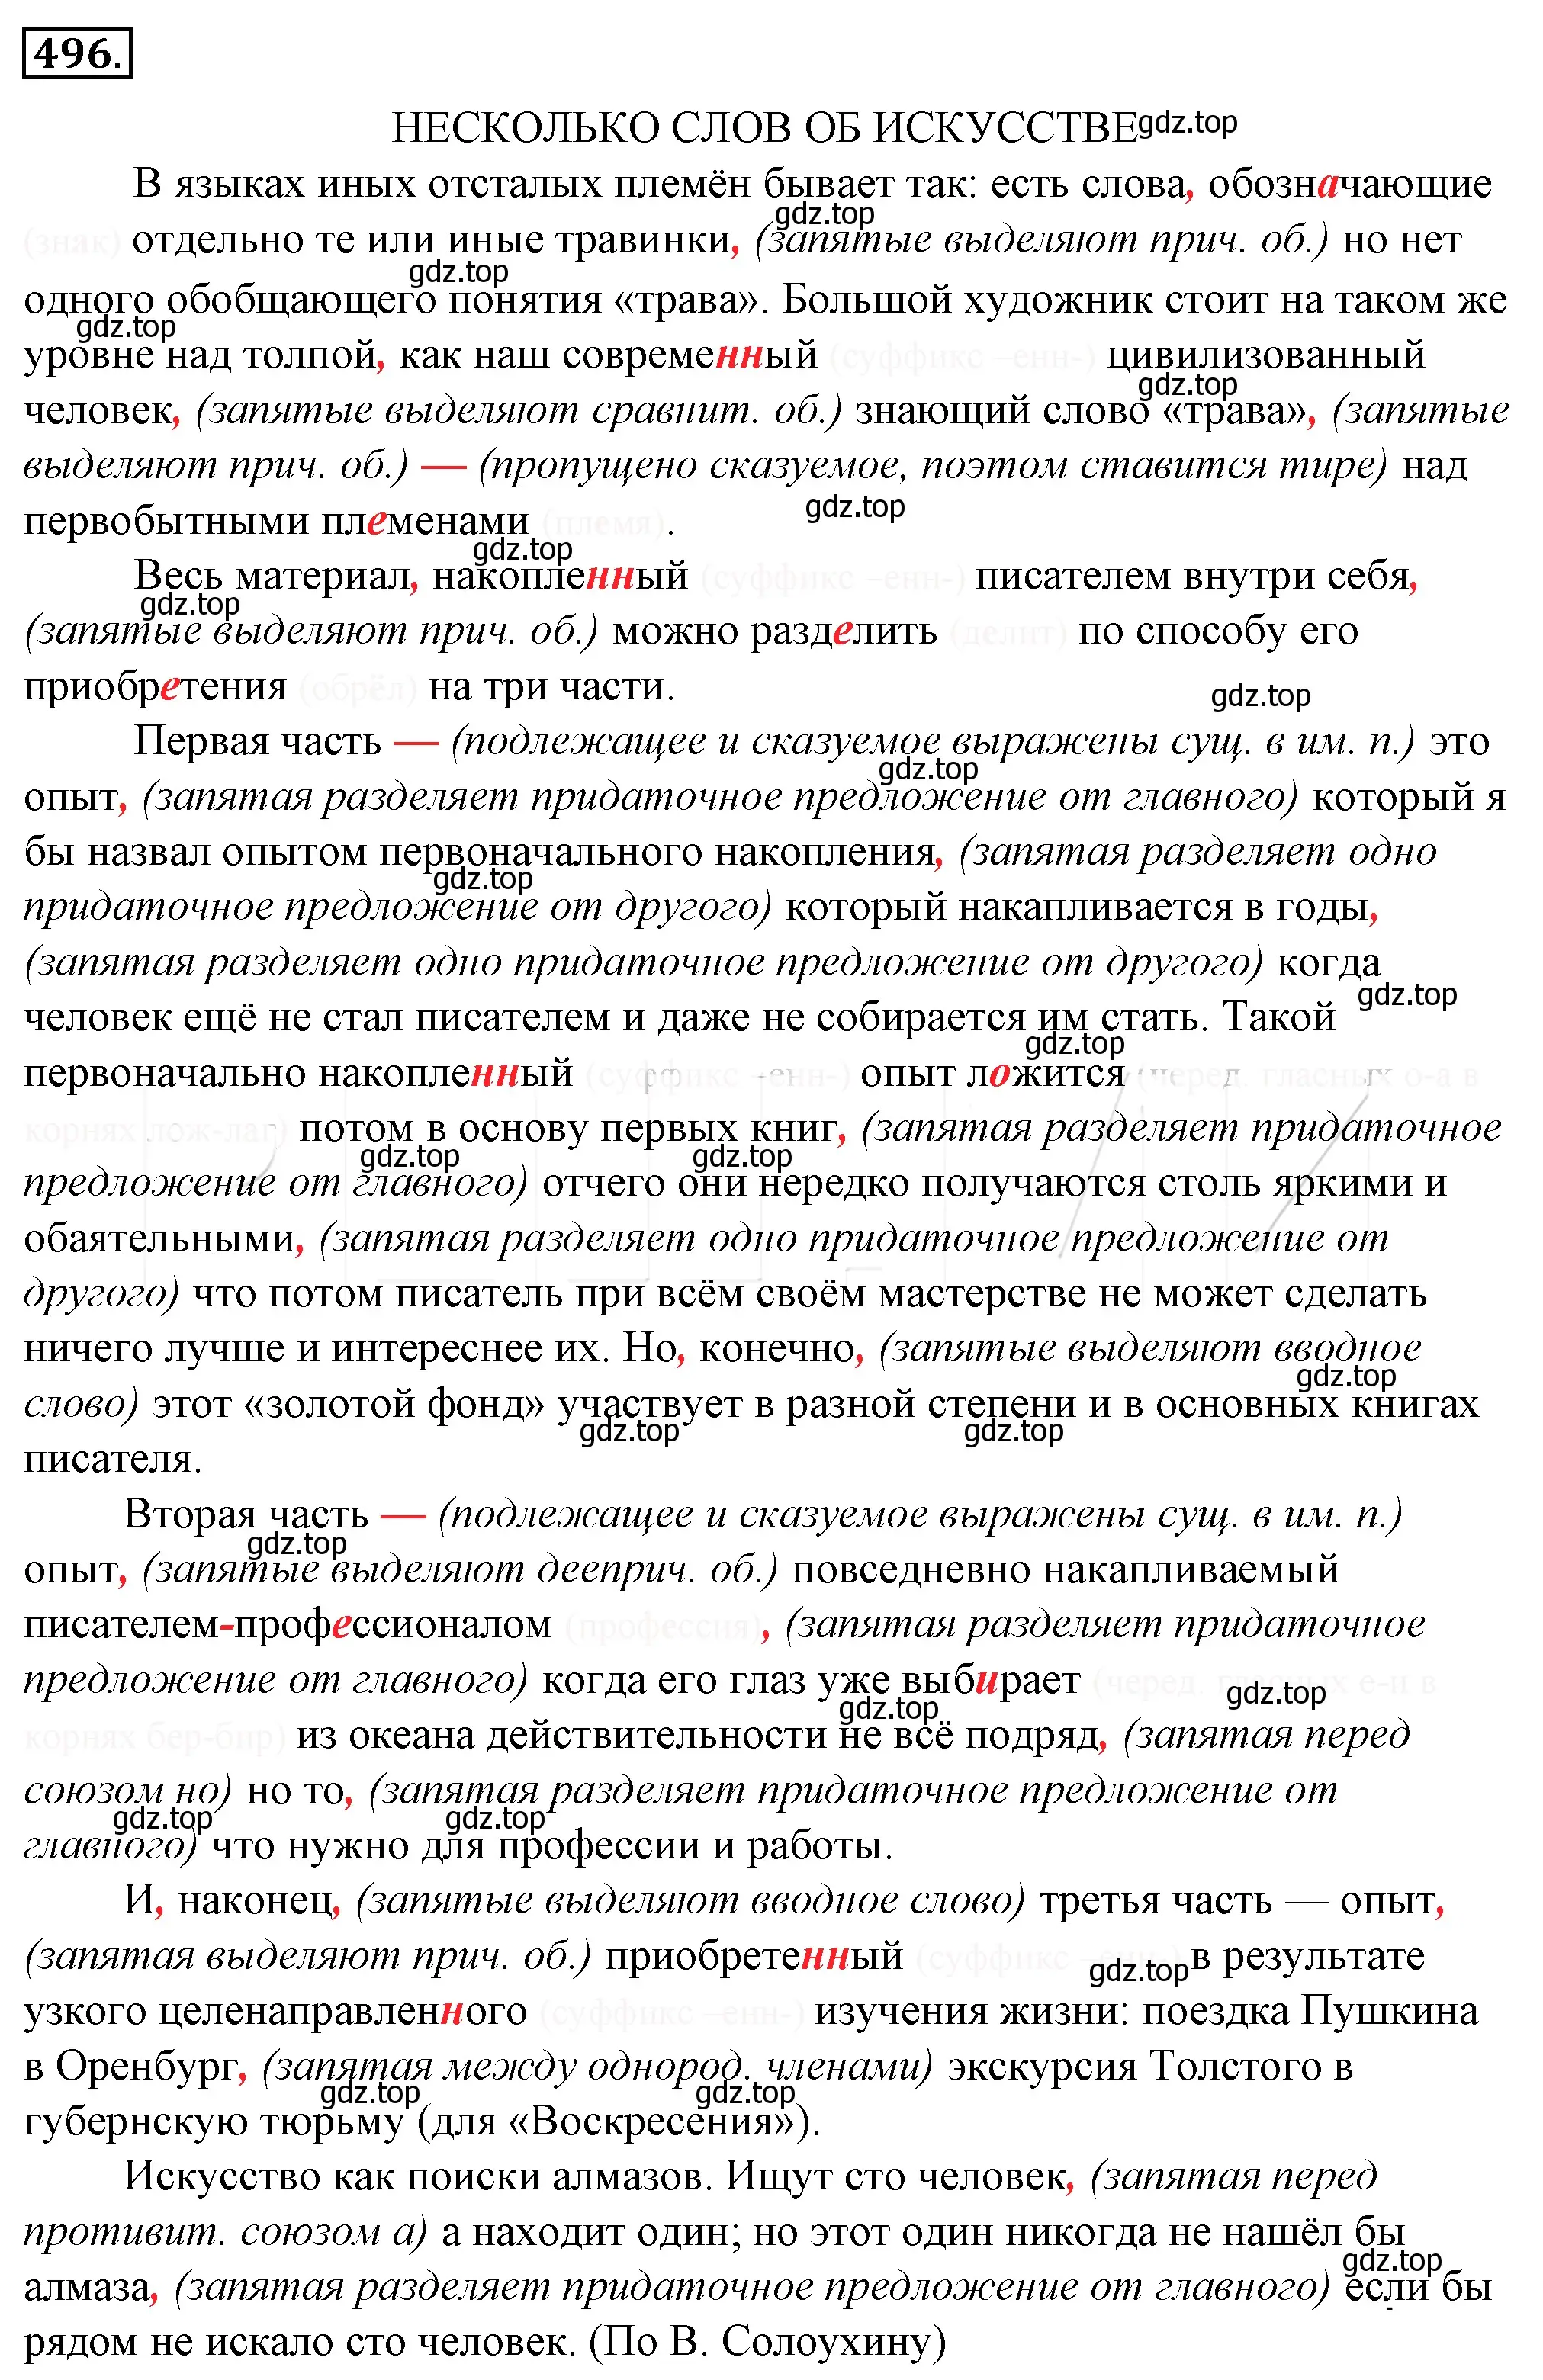 Решение 4. номер 161 (страница 226) гдз по русскому языку 10-11 класс Гольцова, Шамшин, учебник 2 часть